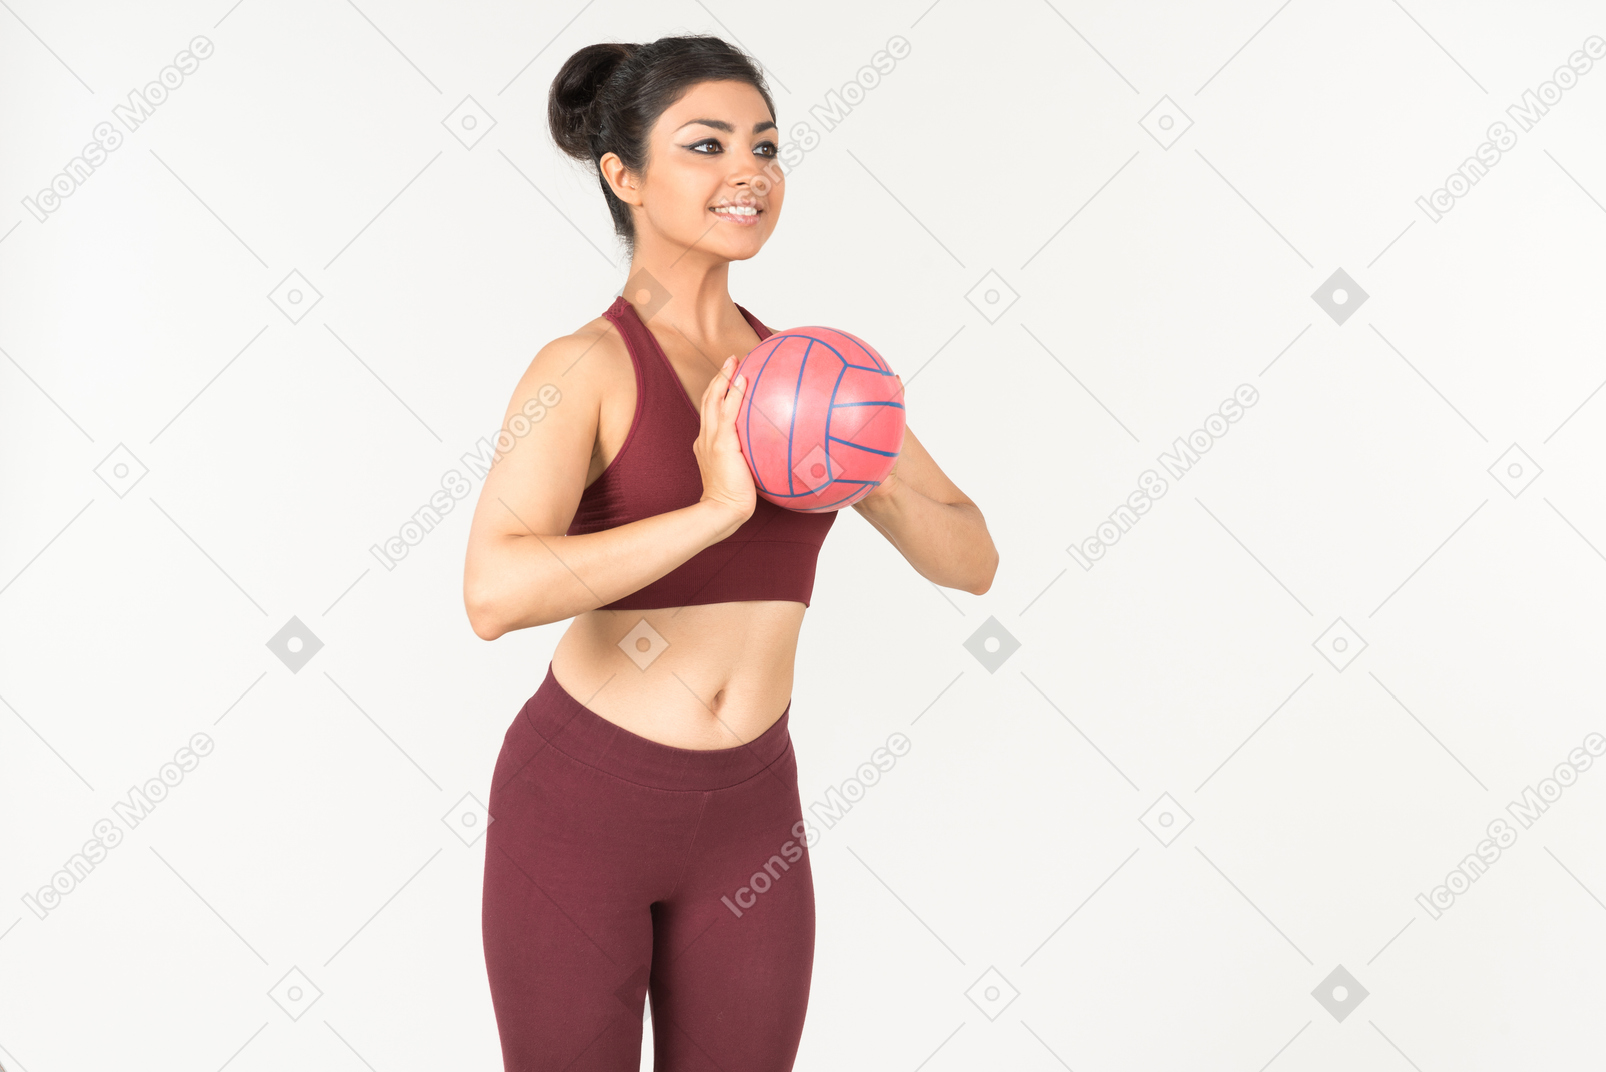 Giovane donna indiana in abiti sporchi sta per lanciare una palla